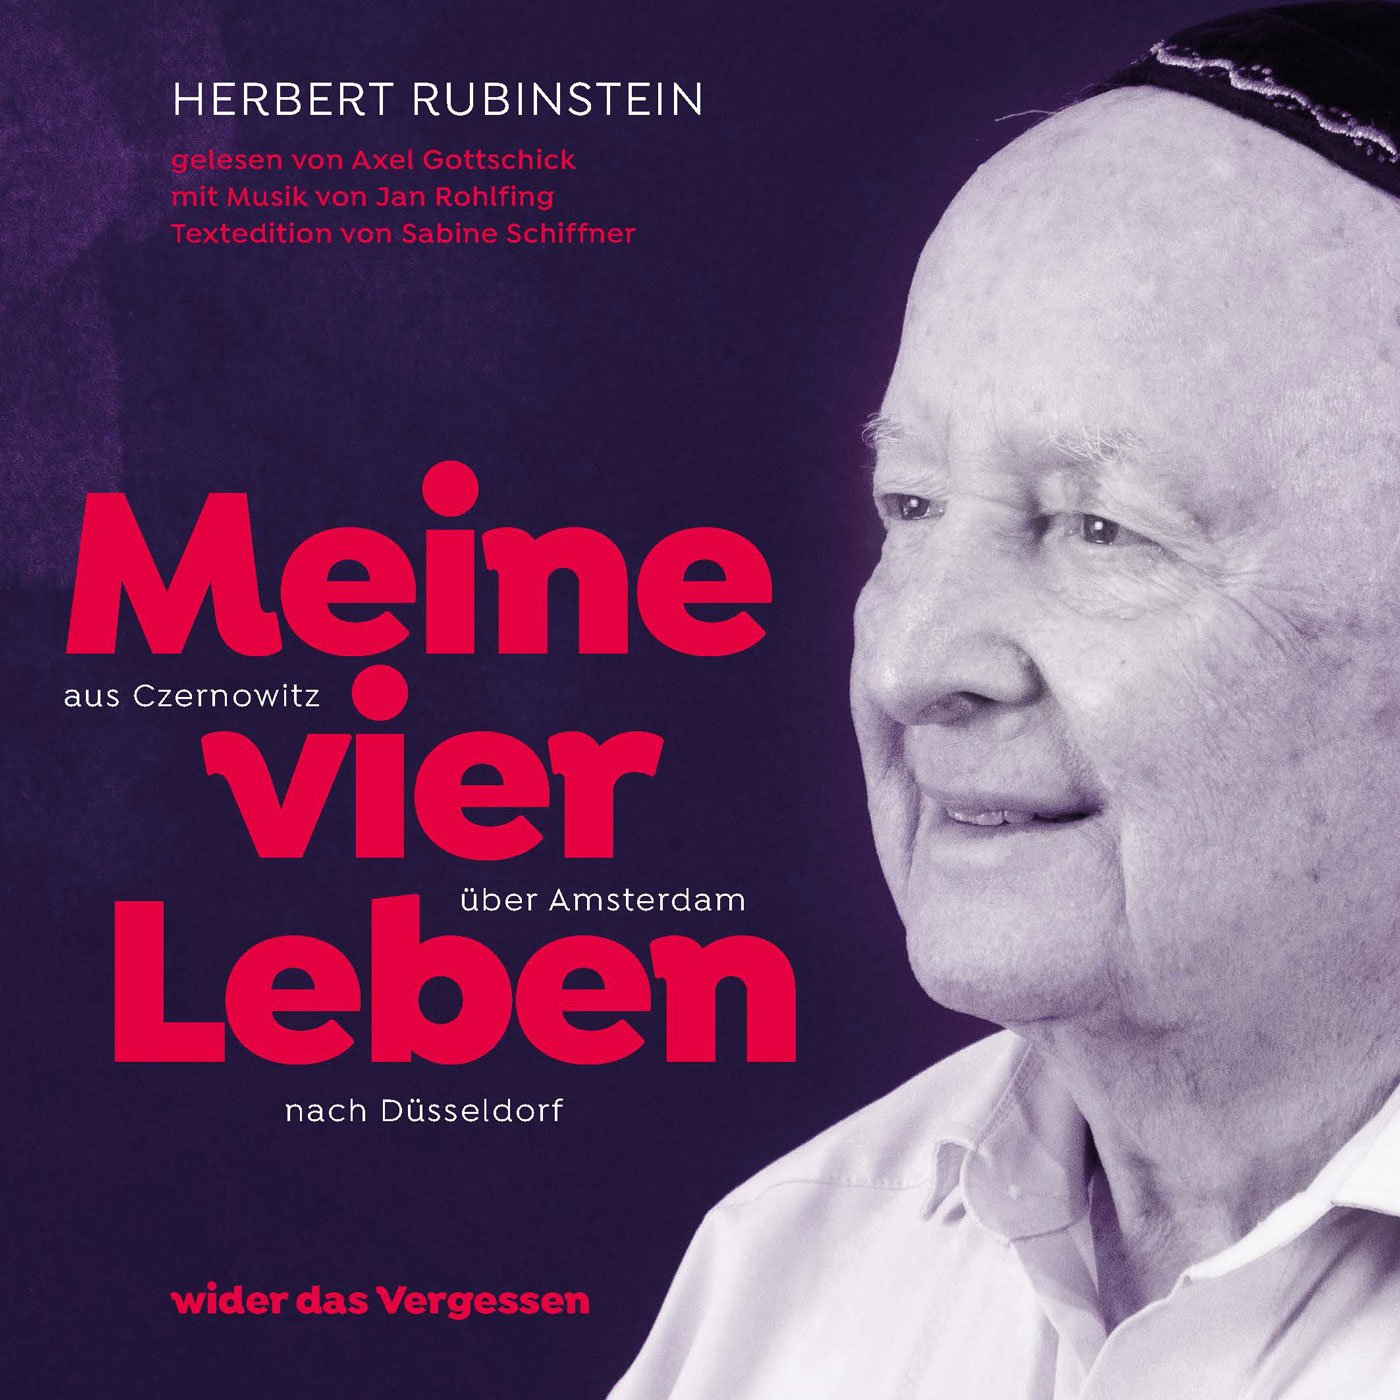 Cover des Hörbuchs "Herbert Rubinstein Meine vier Leben"